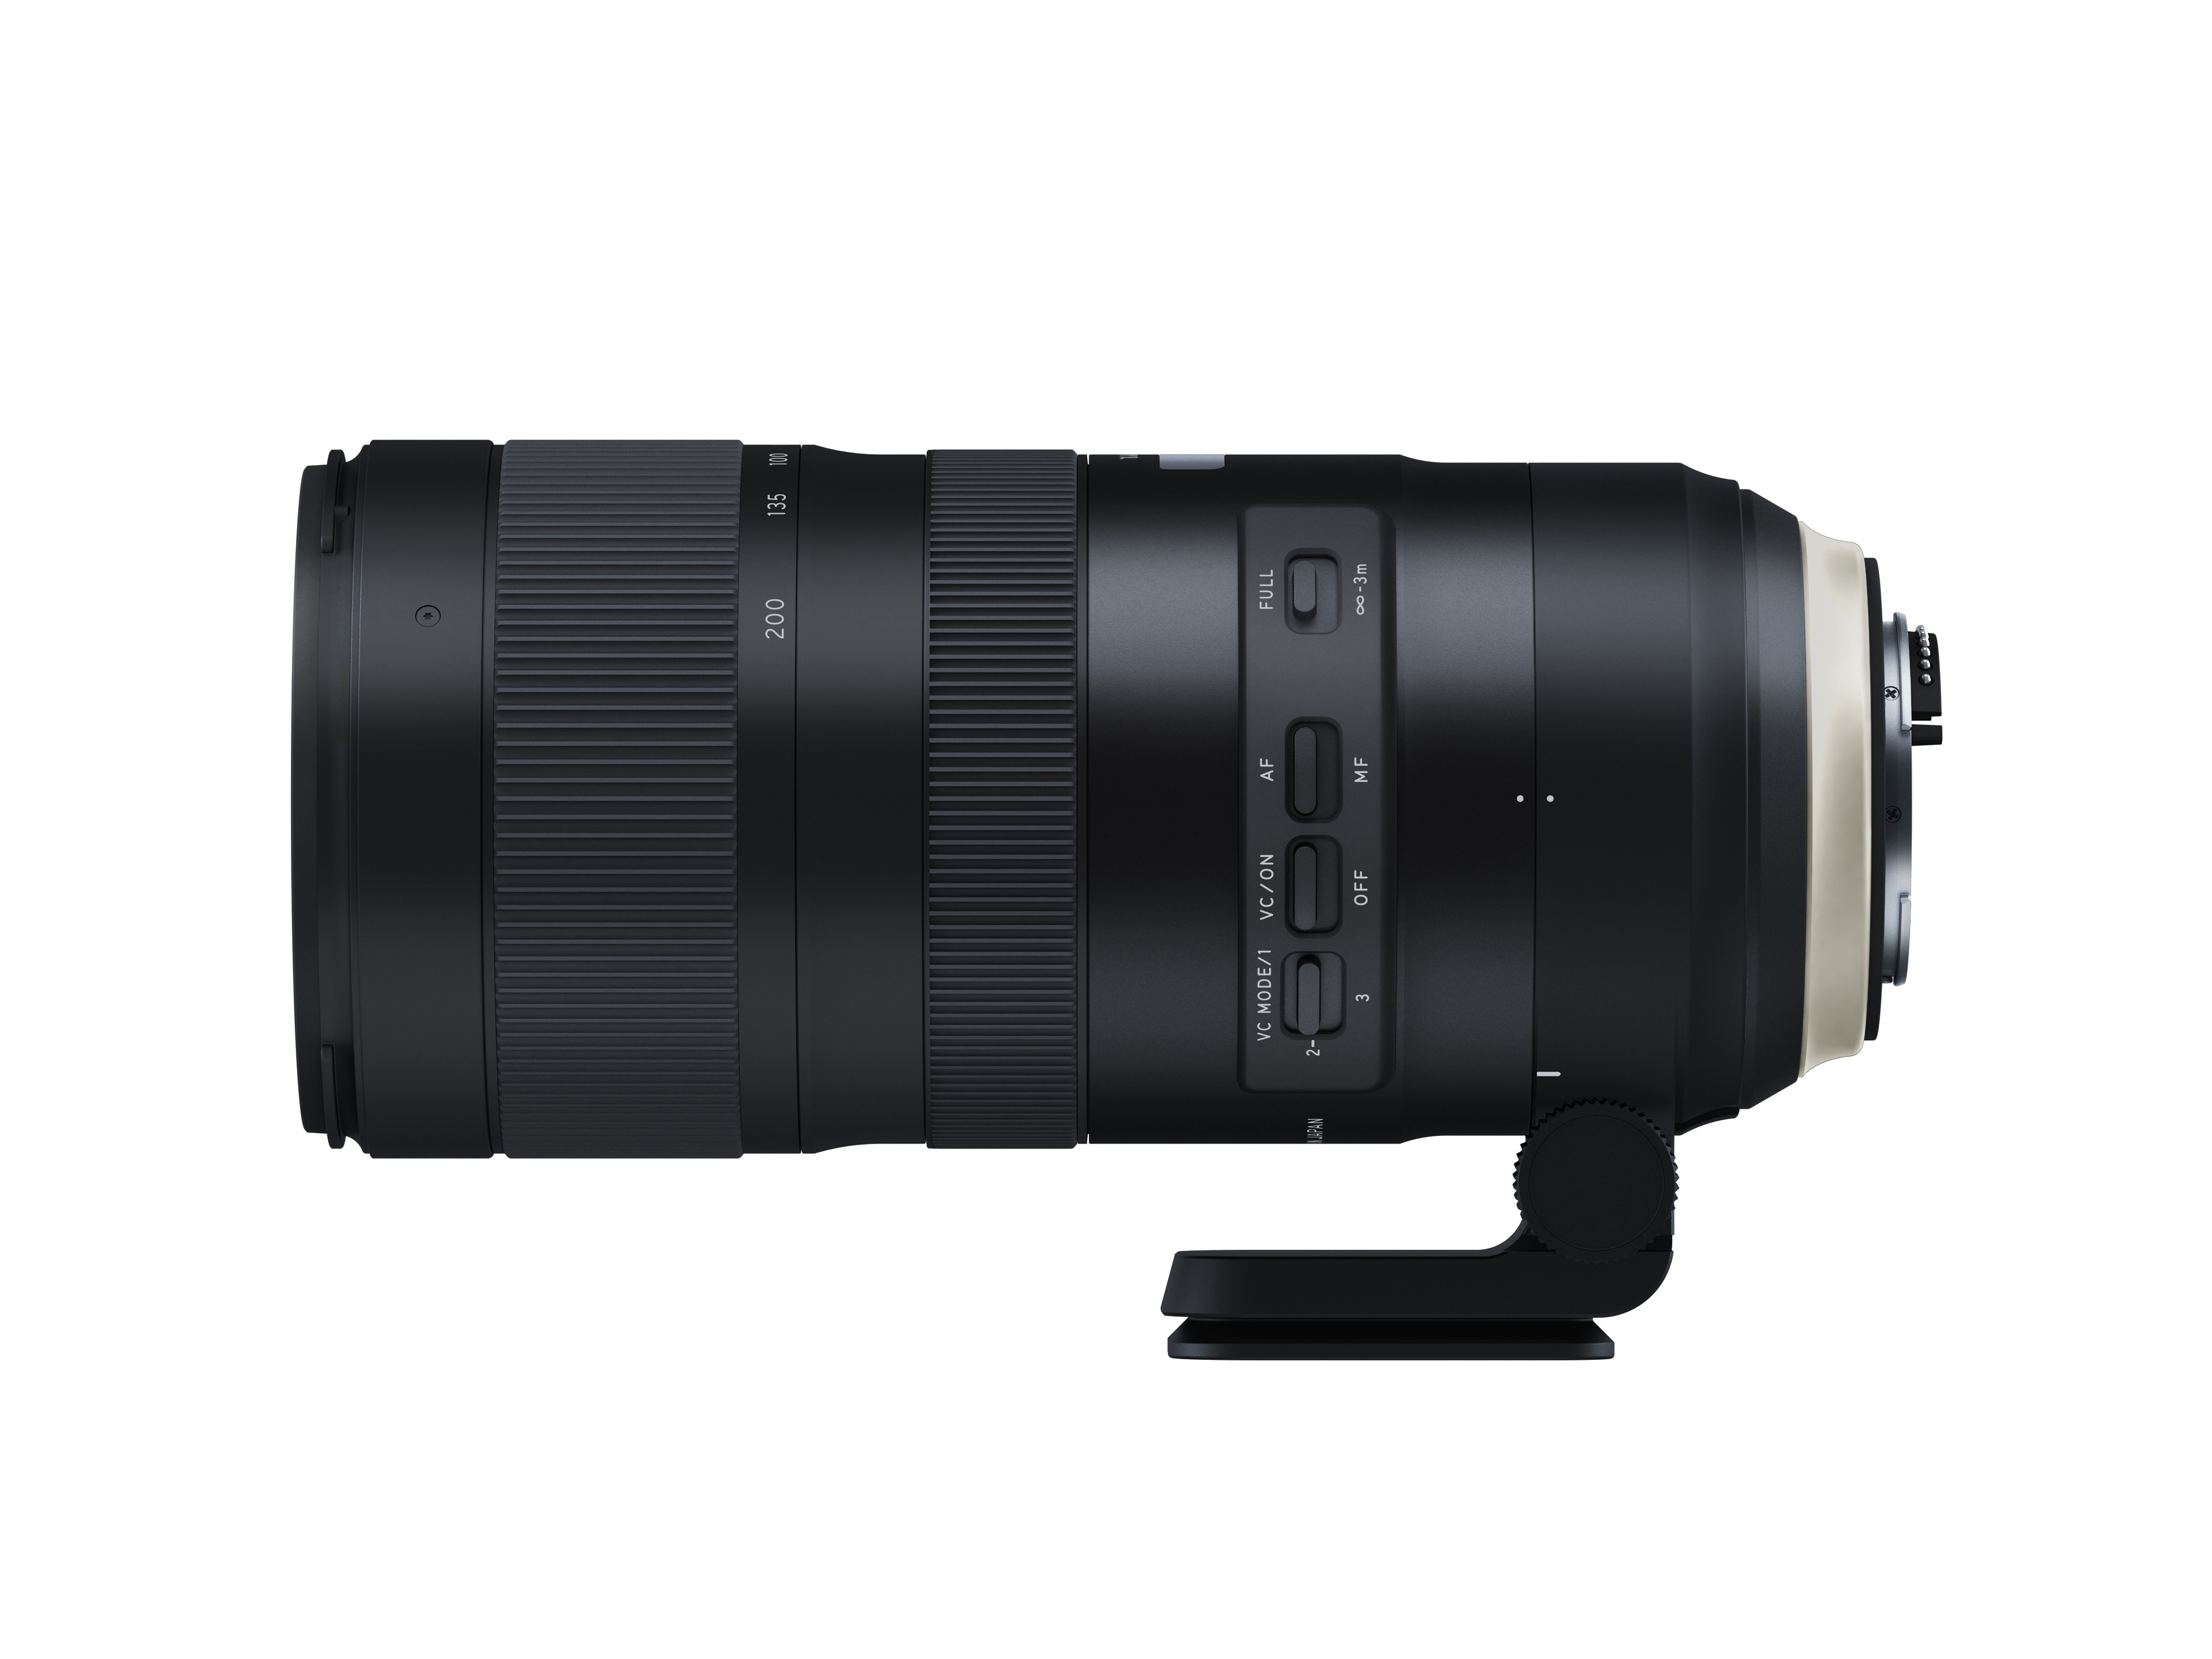 TAMRON A025N SP 200 G2 VC USD, - Schwarz) mm mm für 70 (Objektiv f/2.8 Di, Nikon F-Mount